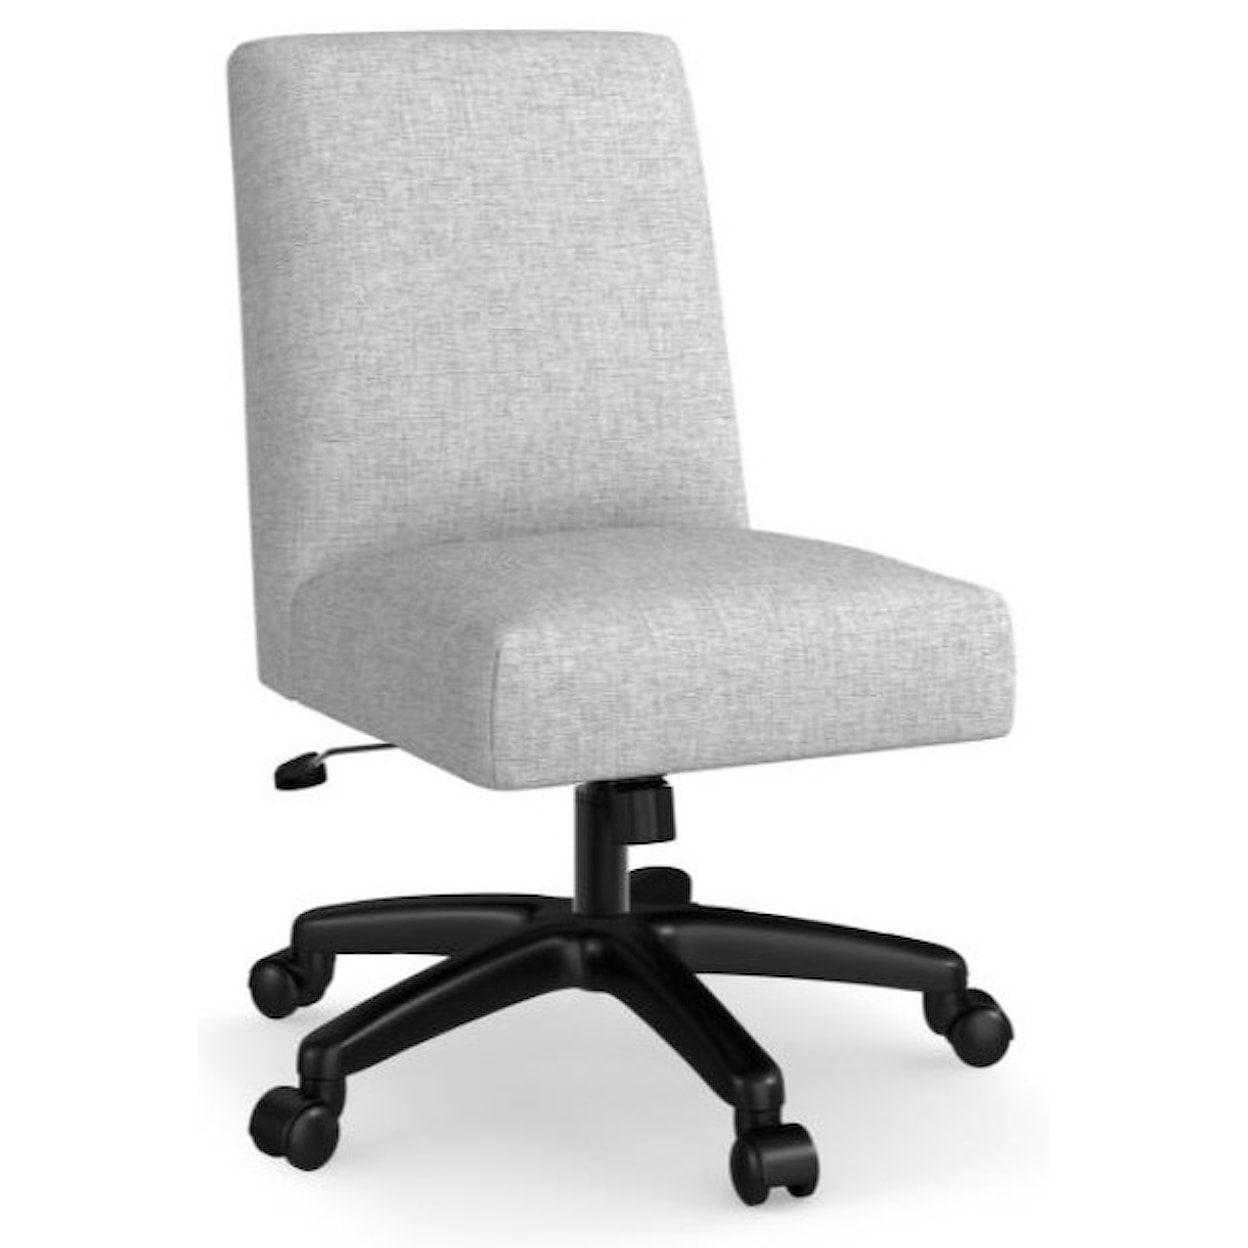 Bassett Desk Chairs Sophie Desk Chair